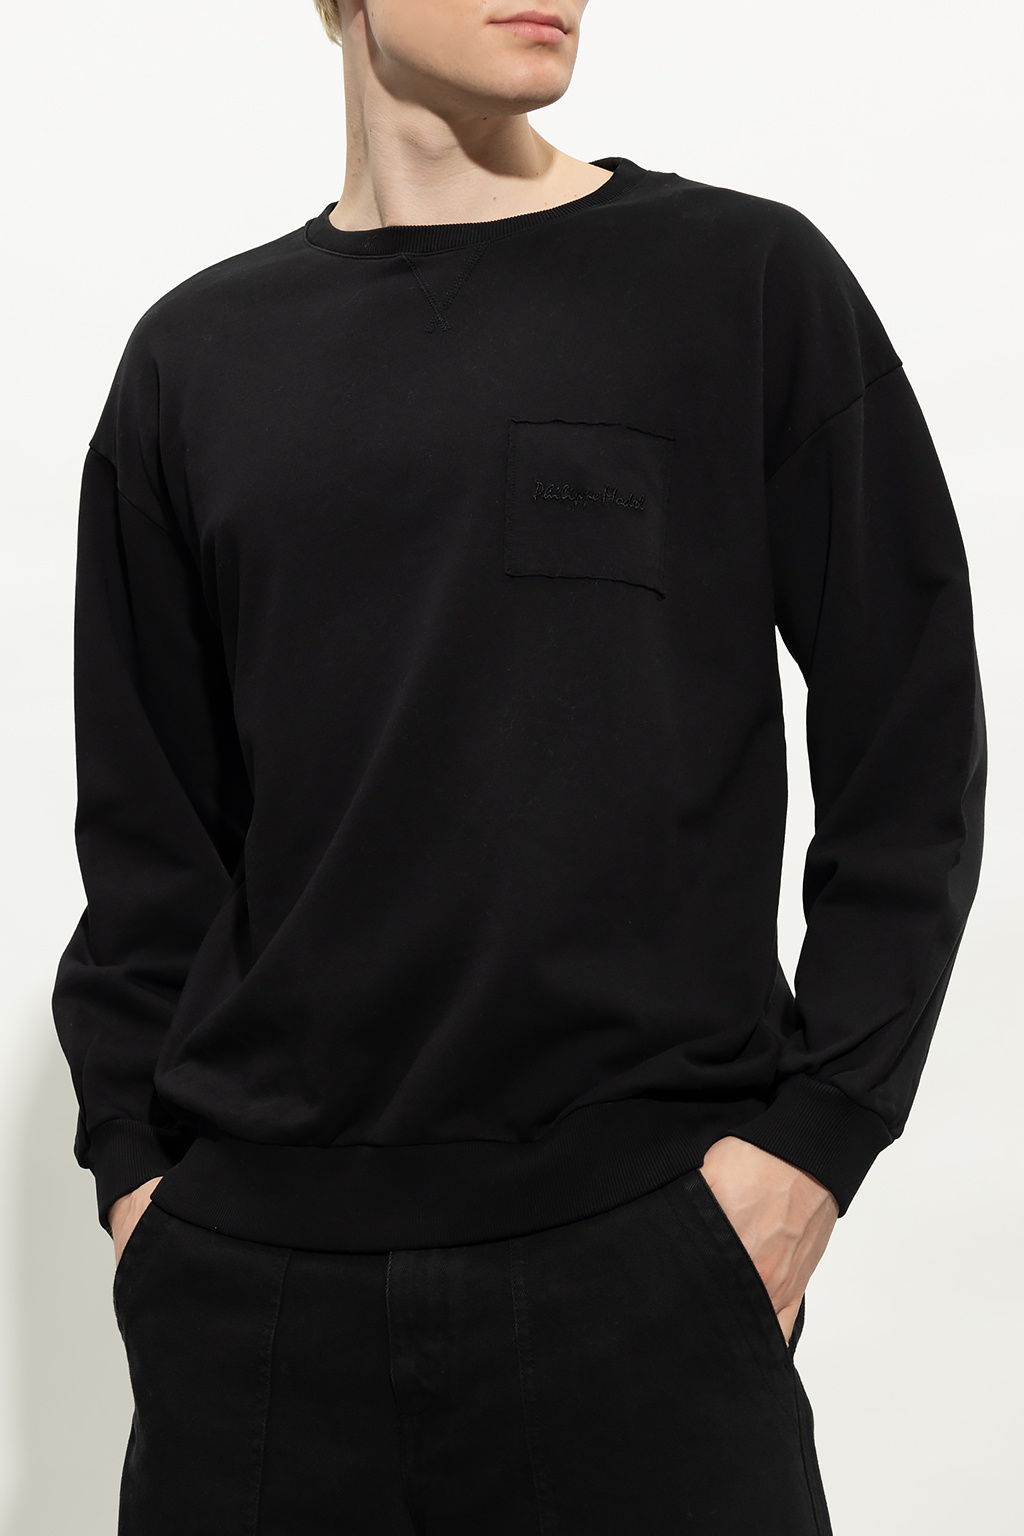 Philippe Model ‘Bellae’ sweatshirt